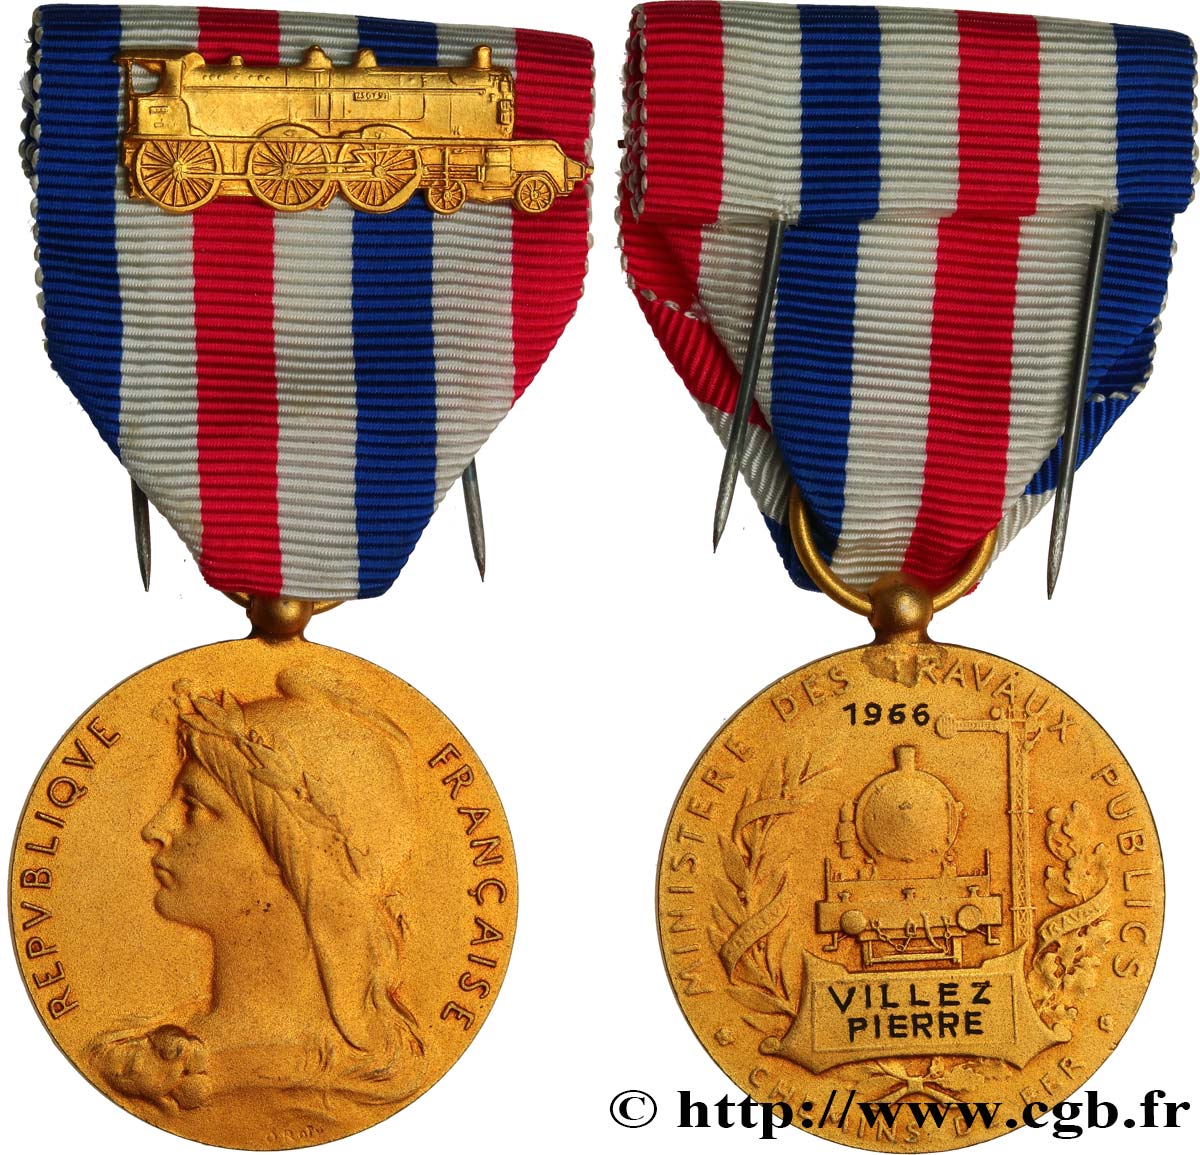 IV REPUBLIC Médaille des Chemins de Fer, Ministère des travaux publics AU